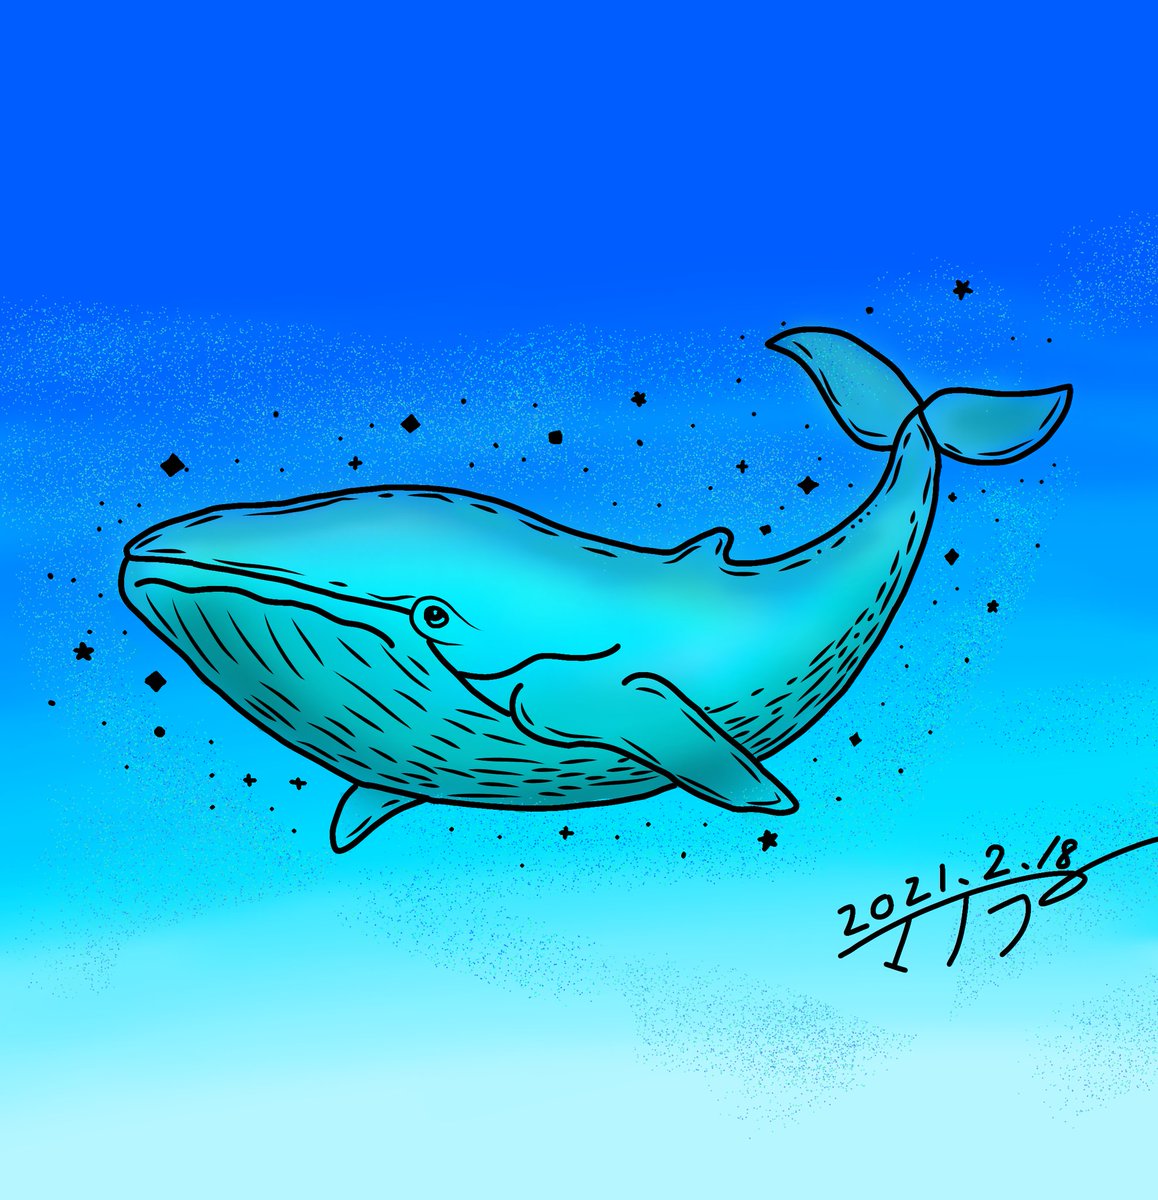 クジラの雲の絵 のイラスト マンガ コスプレ モデル作品 1 件 Twoucan